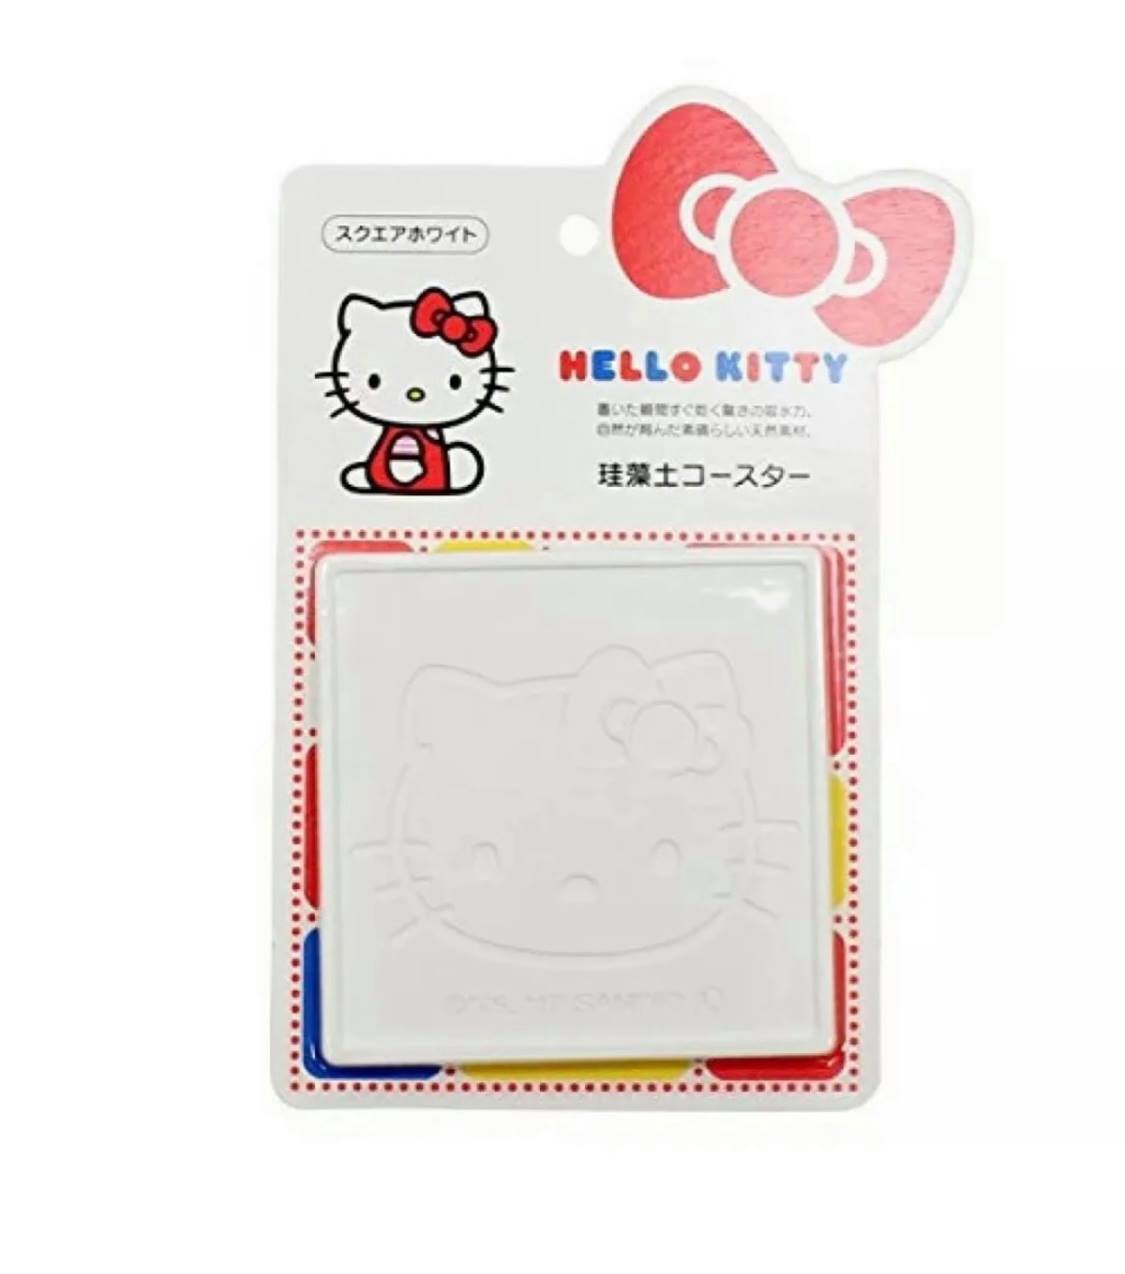 Hello Kitty Exclusive Diatomaceous Earth Coaster